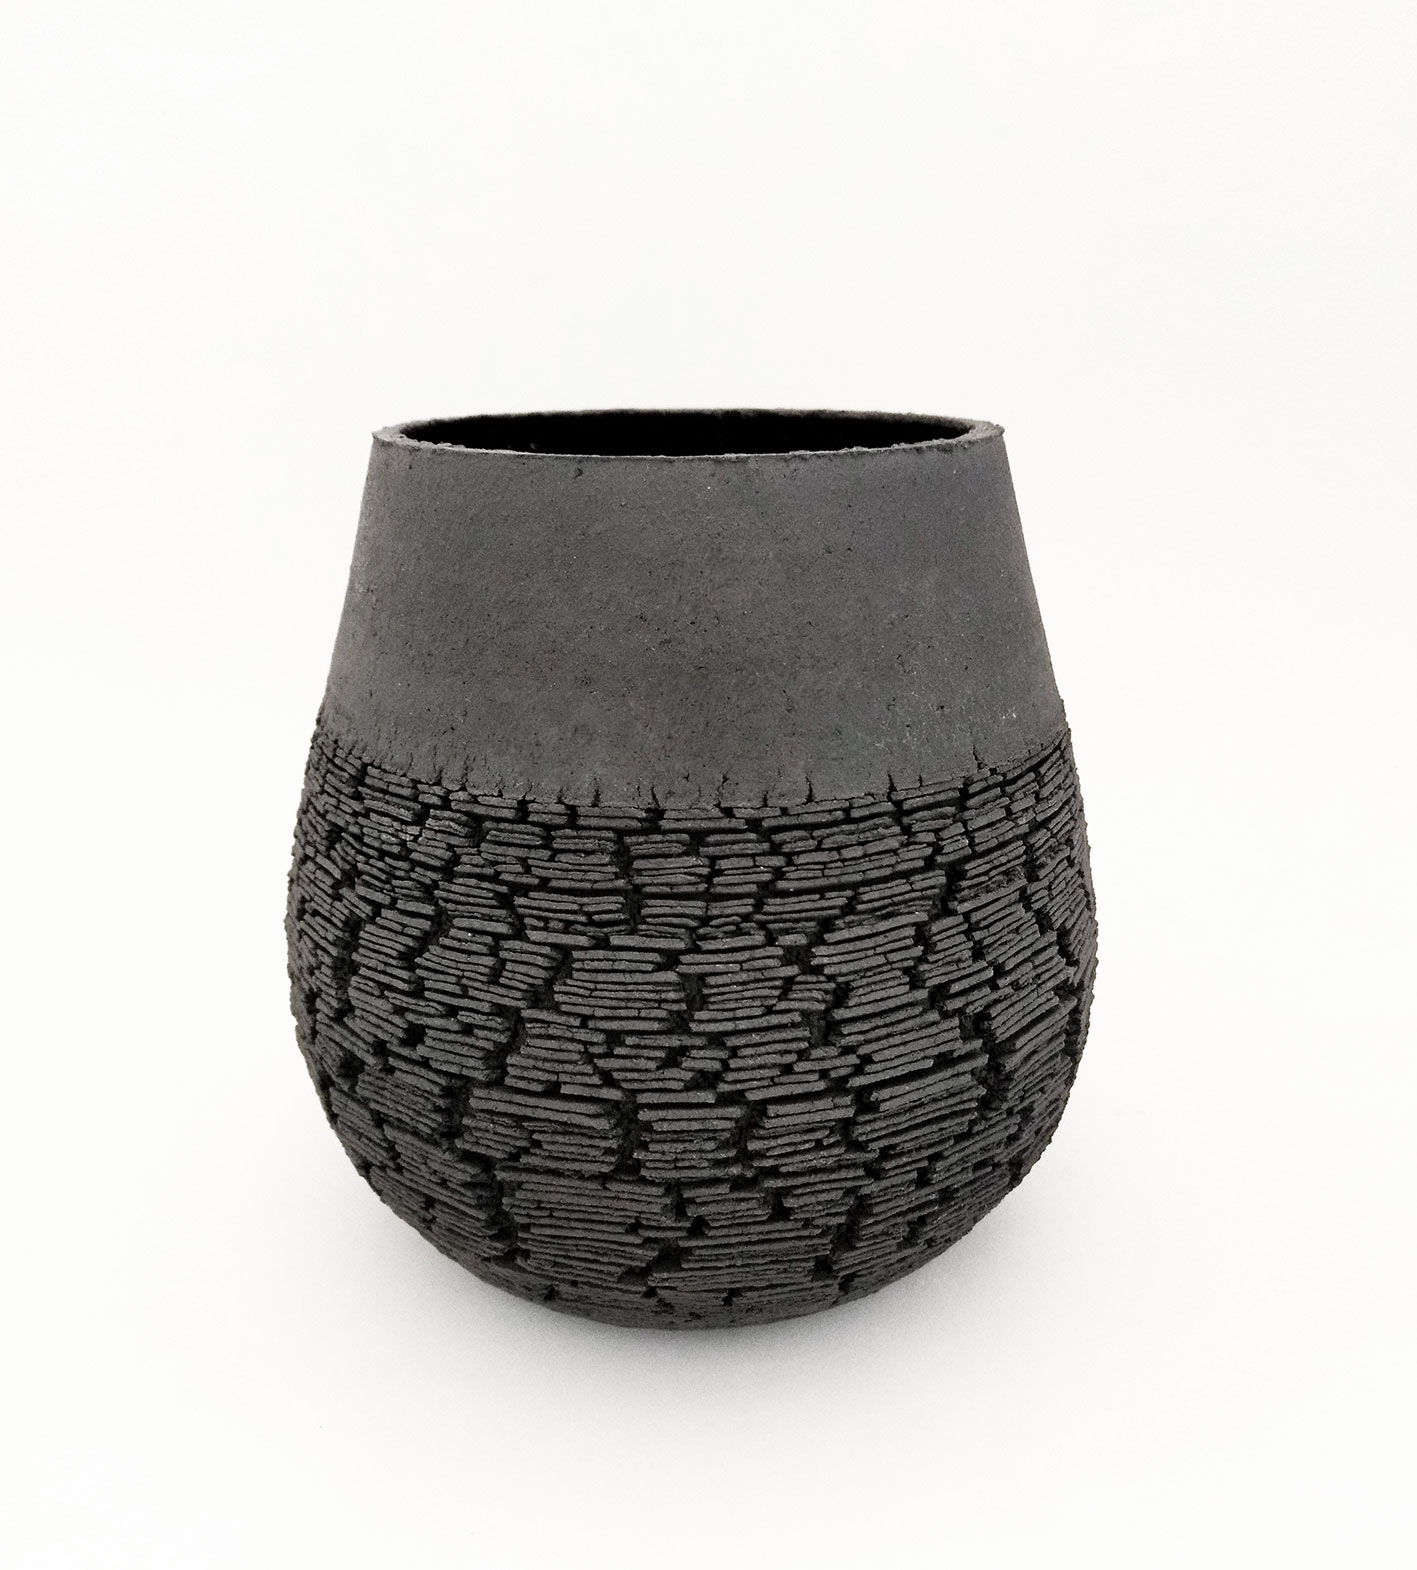 Handmade ceramic vase Yvette Hoffmann Design